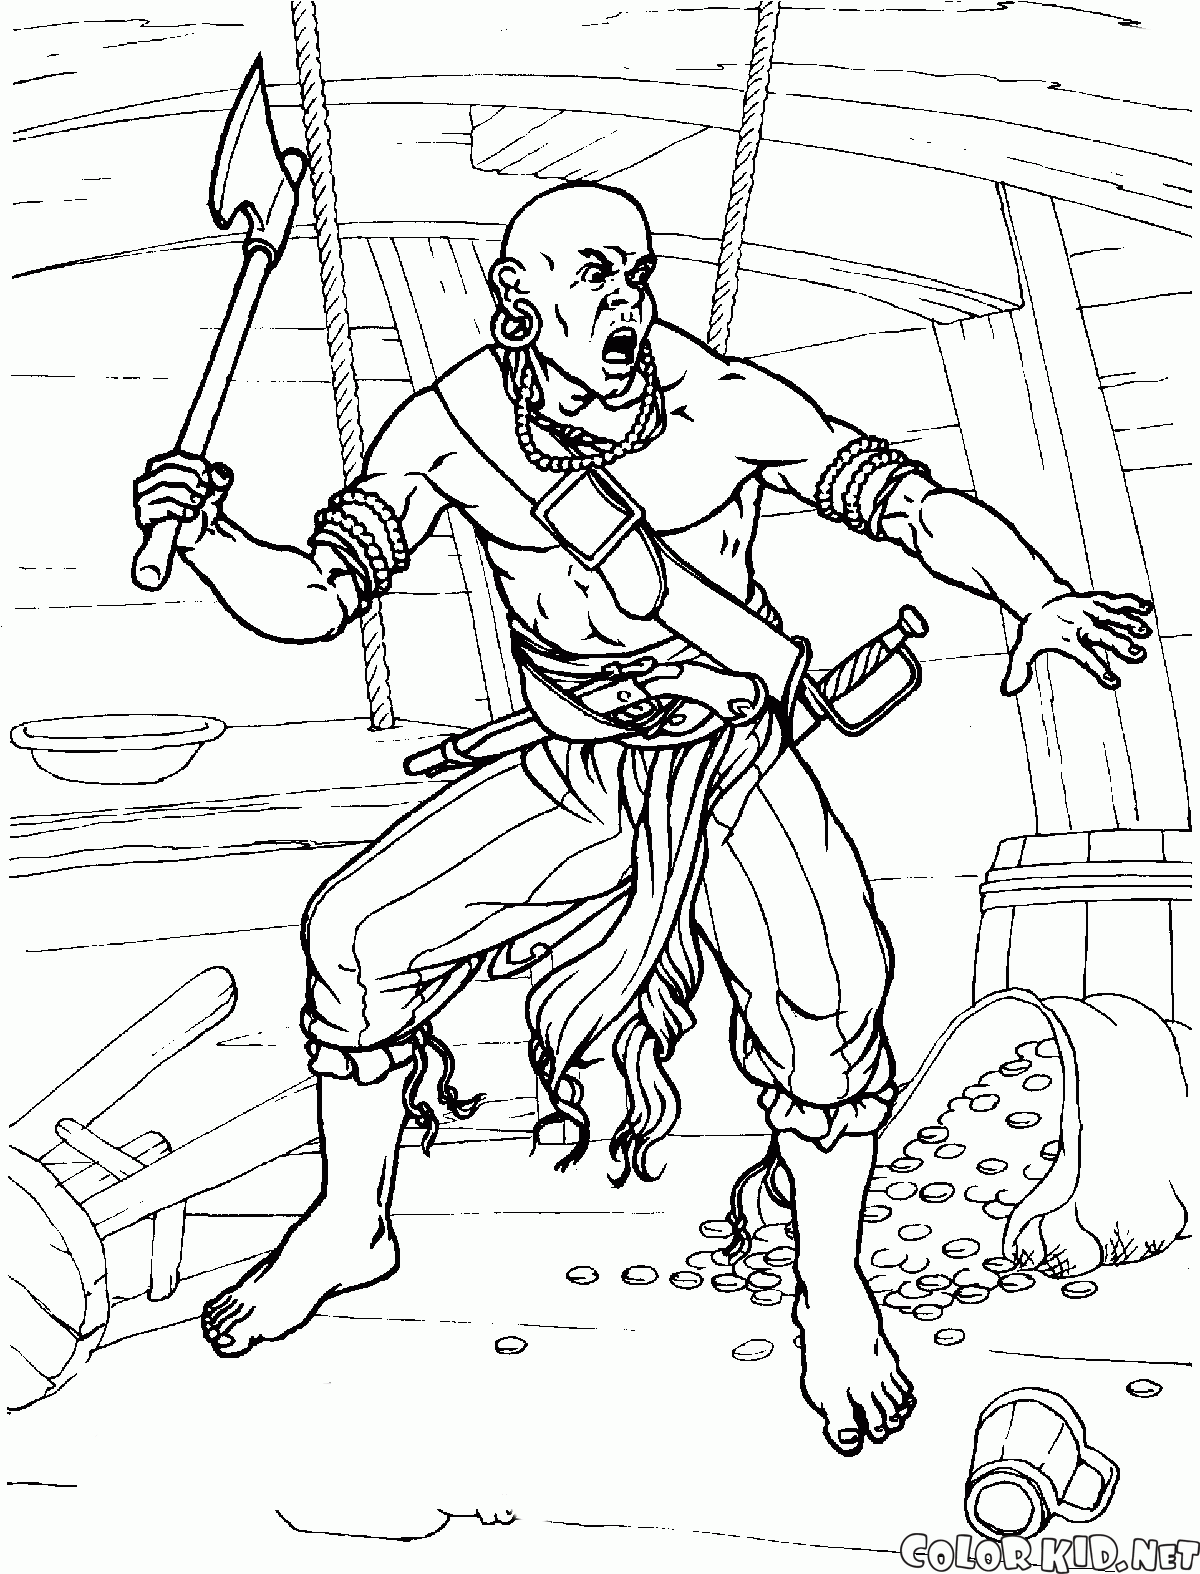 Pirata com um machado